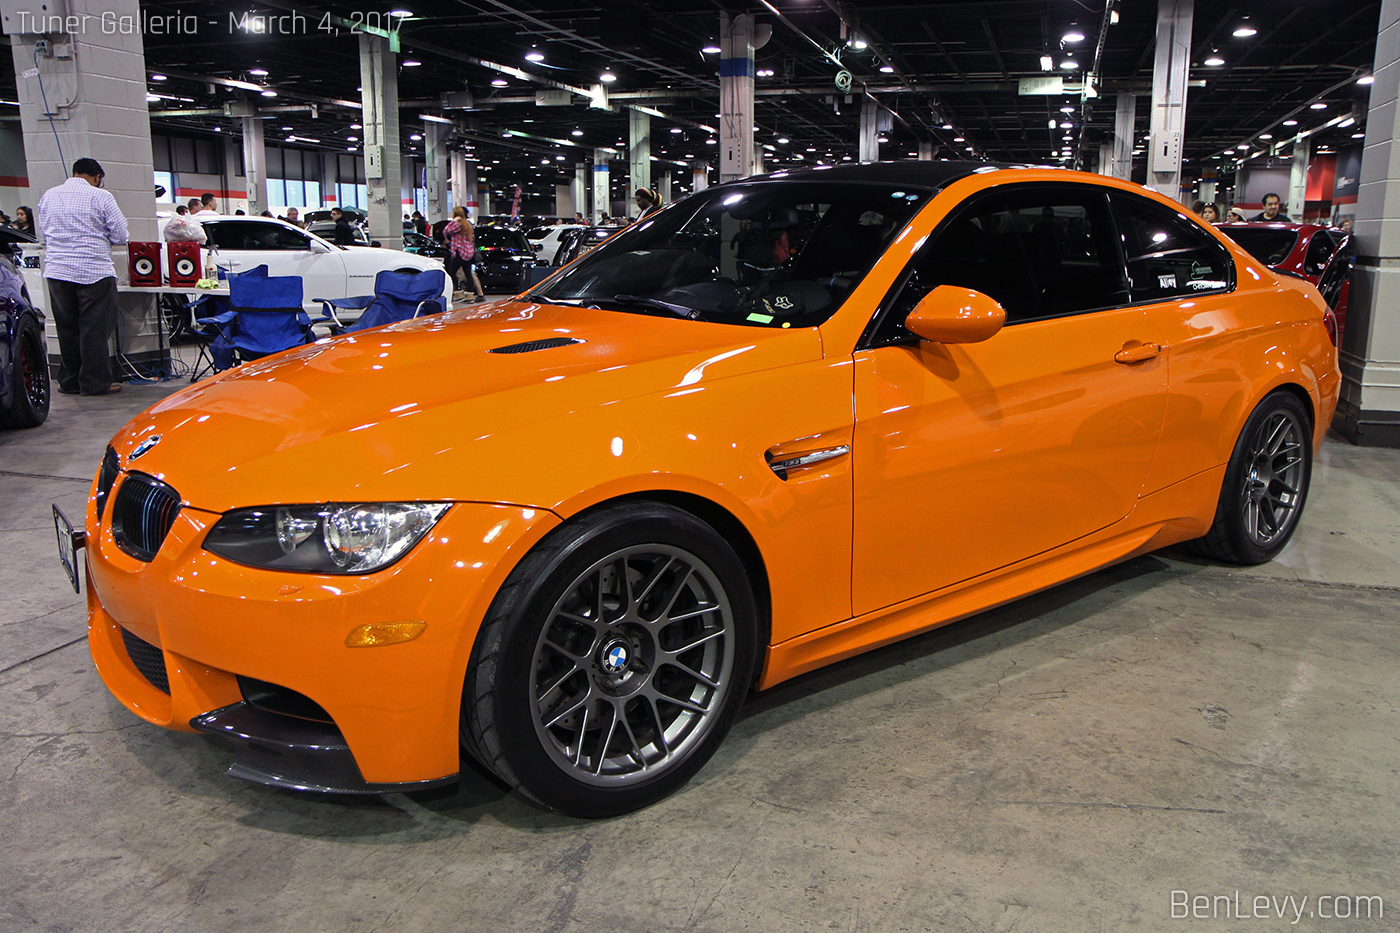 E92 BMW M3 in Fire Orange